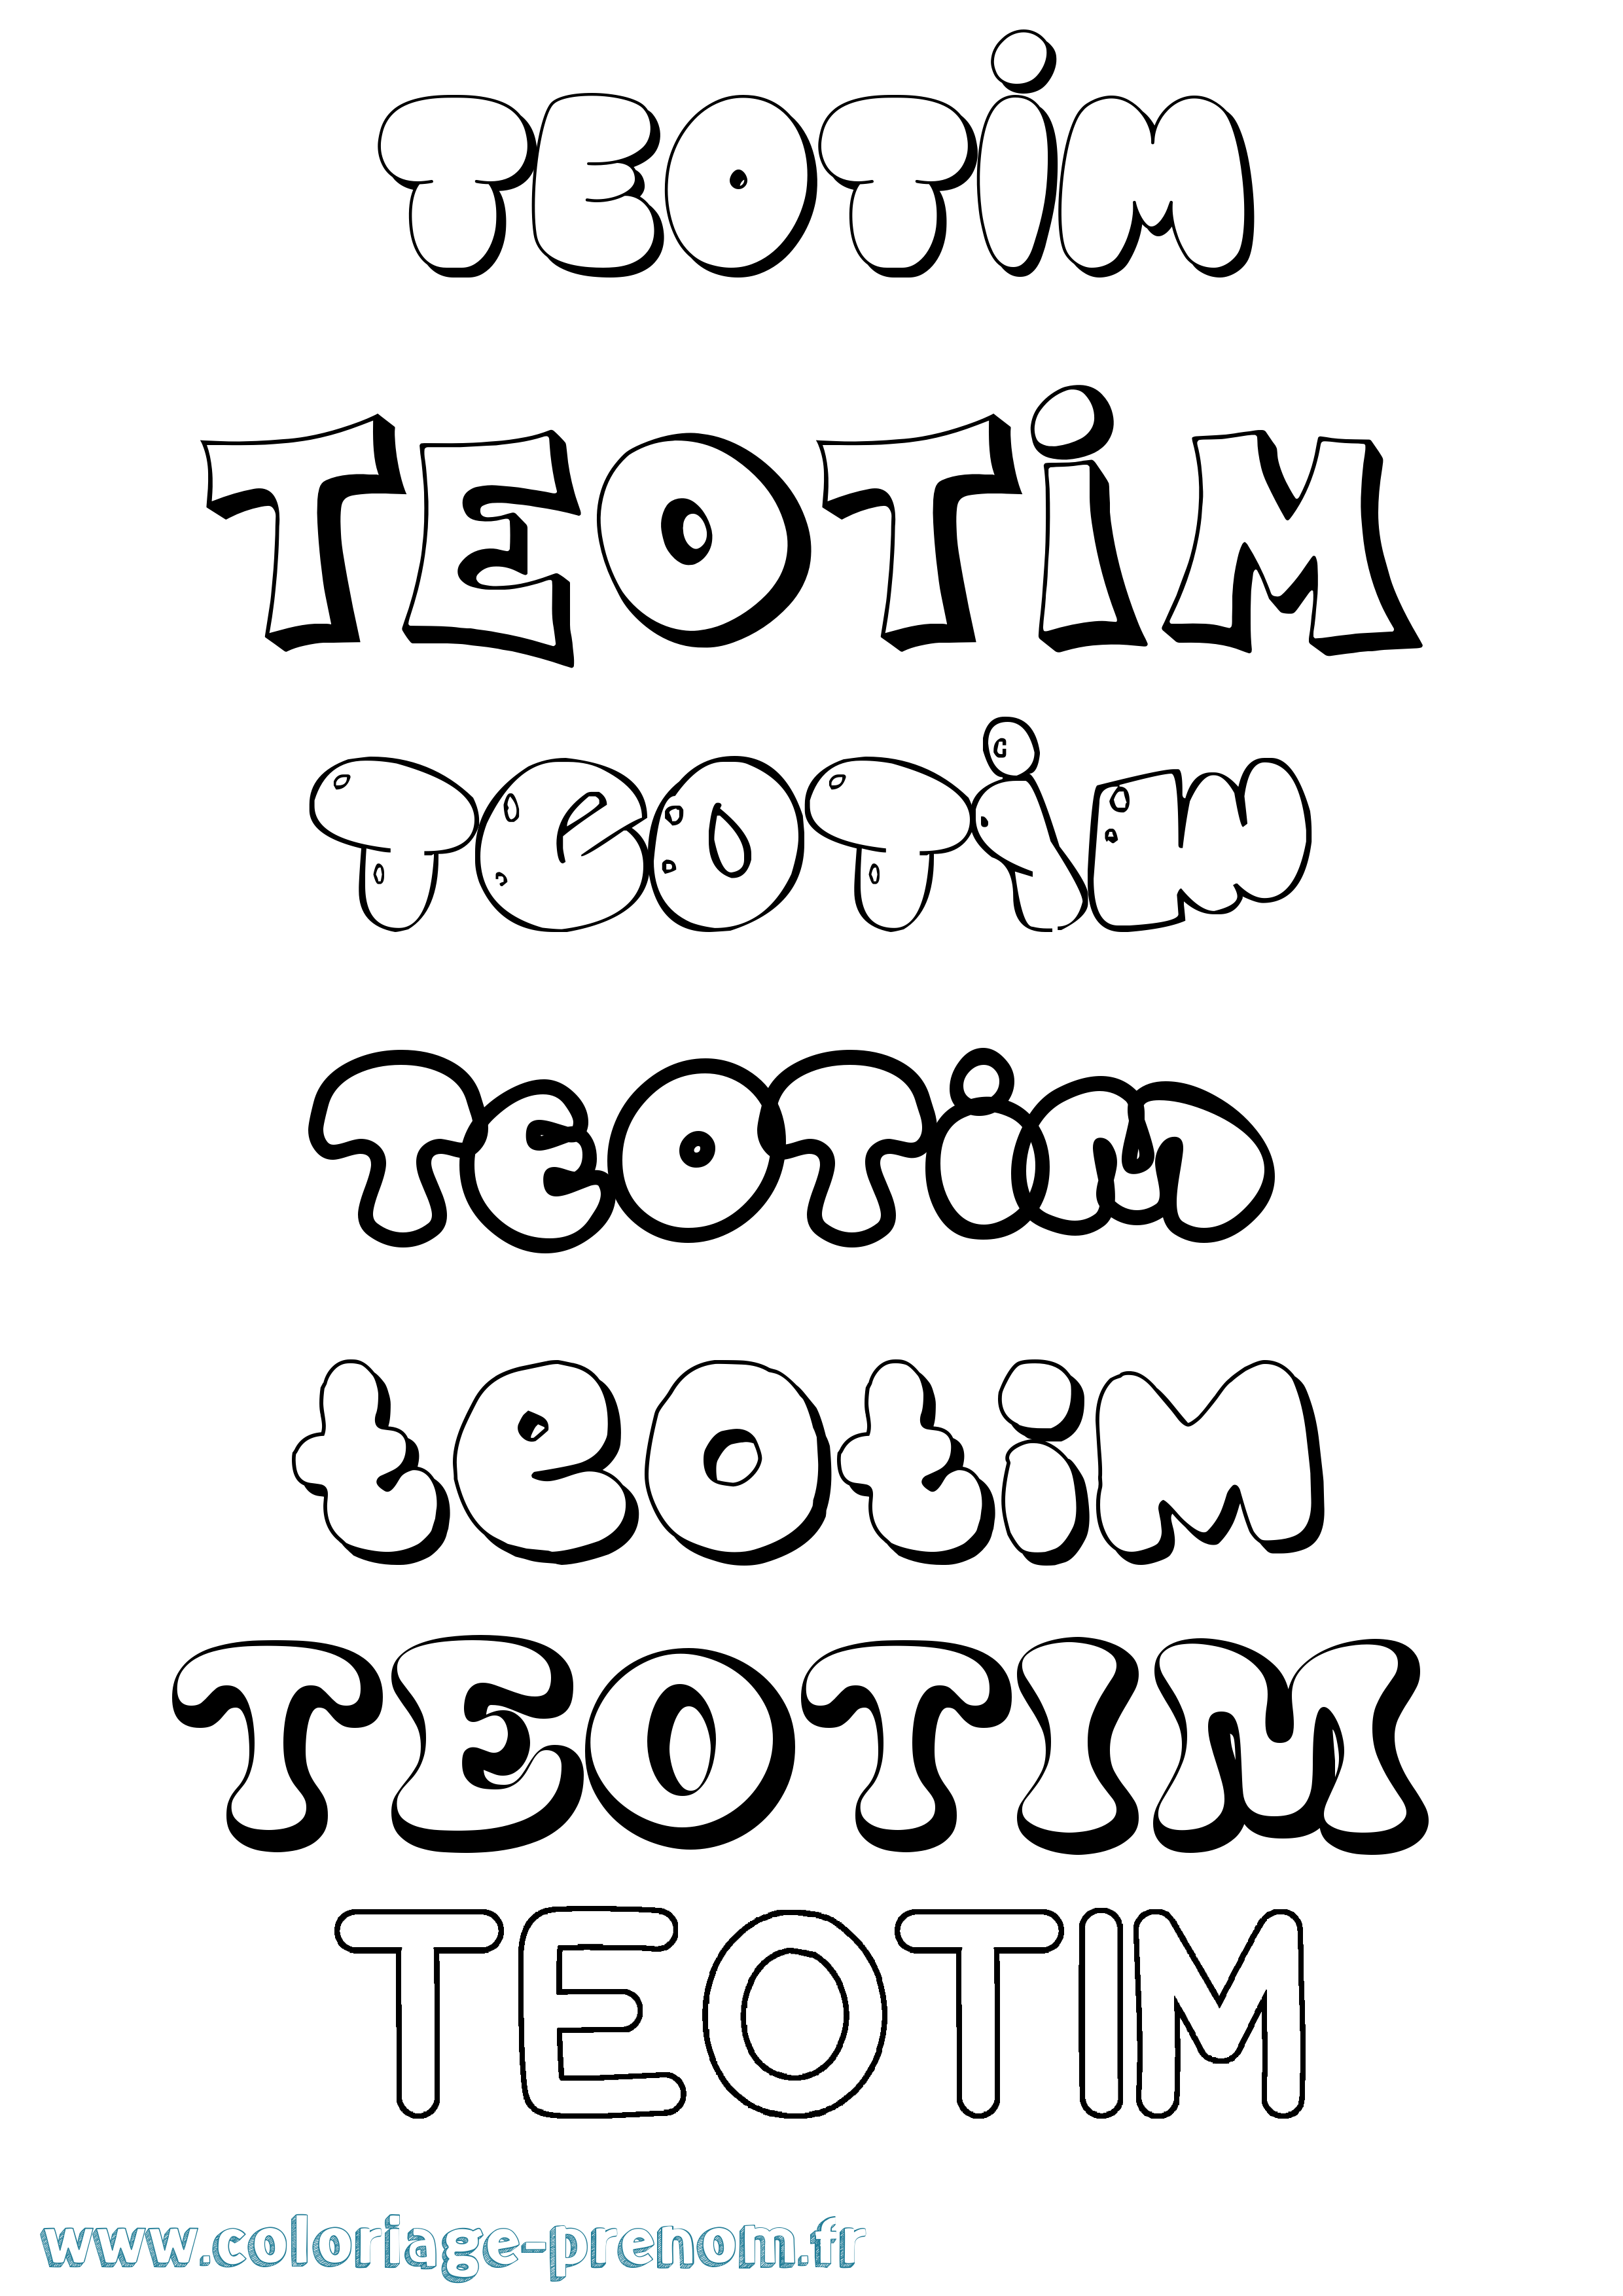 Coloriage prénom Teotim Bubble